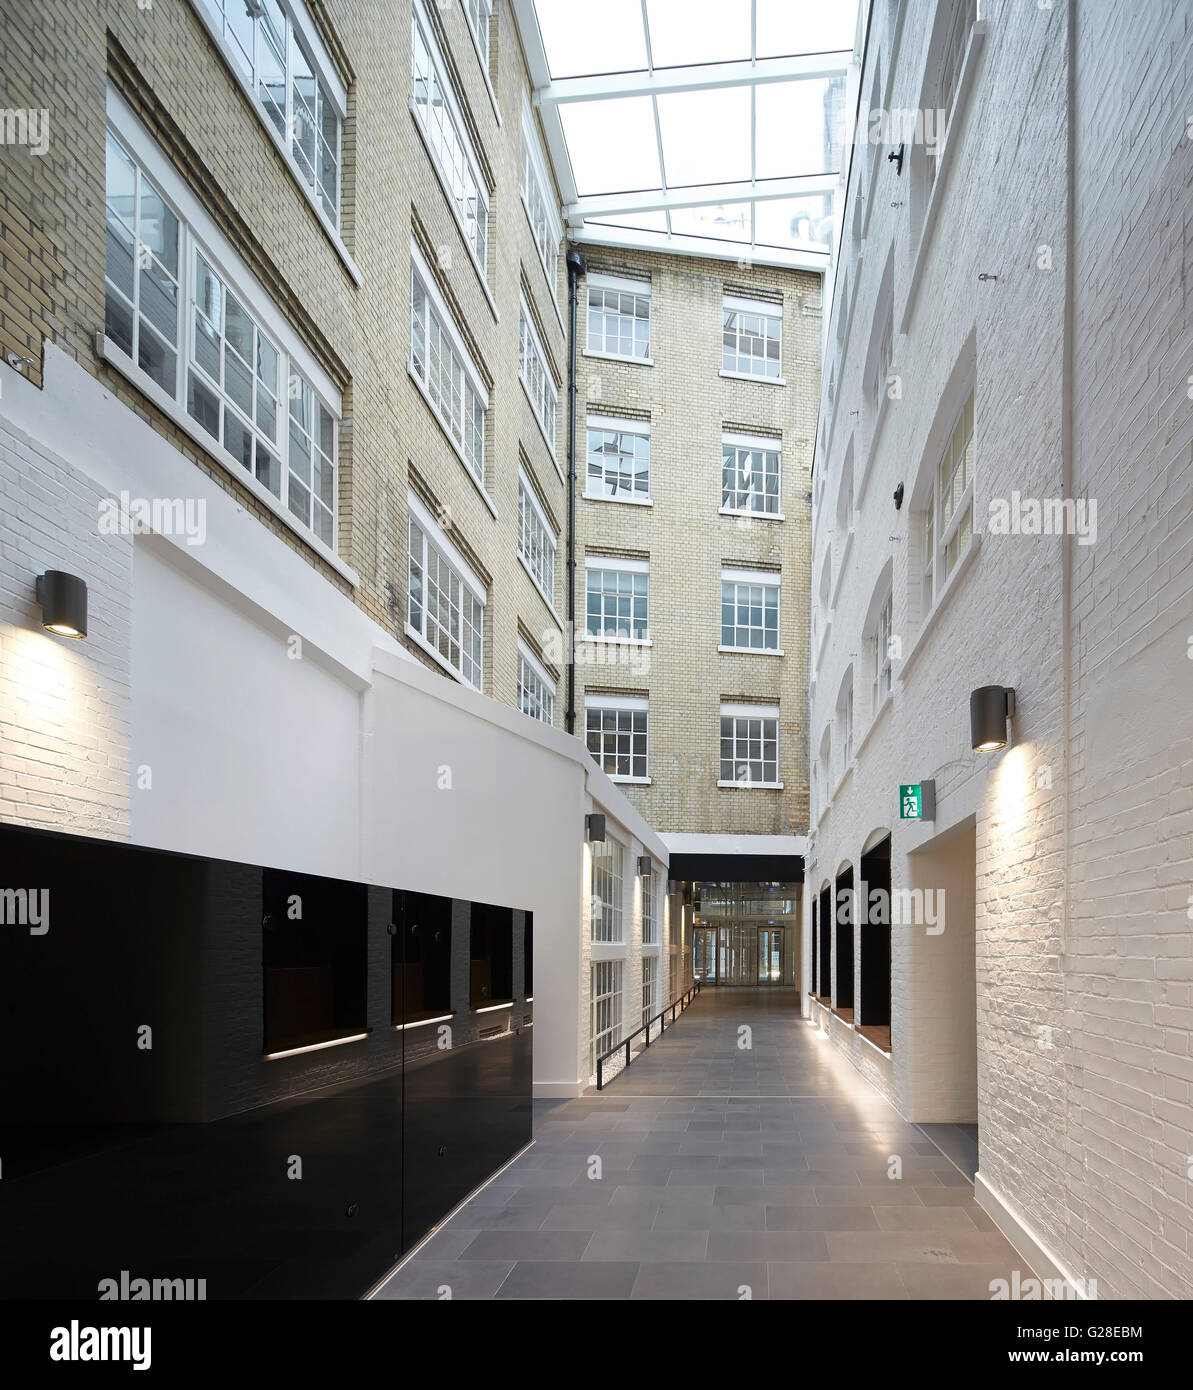 La rue interne reliant les volumes du bâtiment. Heal's, Torrington Place, Londres, Royaume-Uni. Architecte : John McAslan & Partners, Banque D'Images